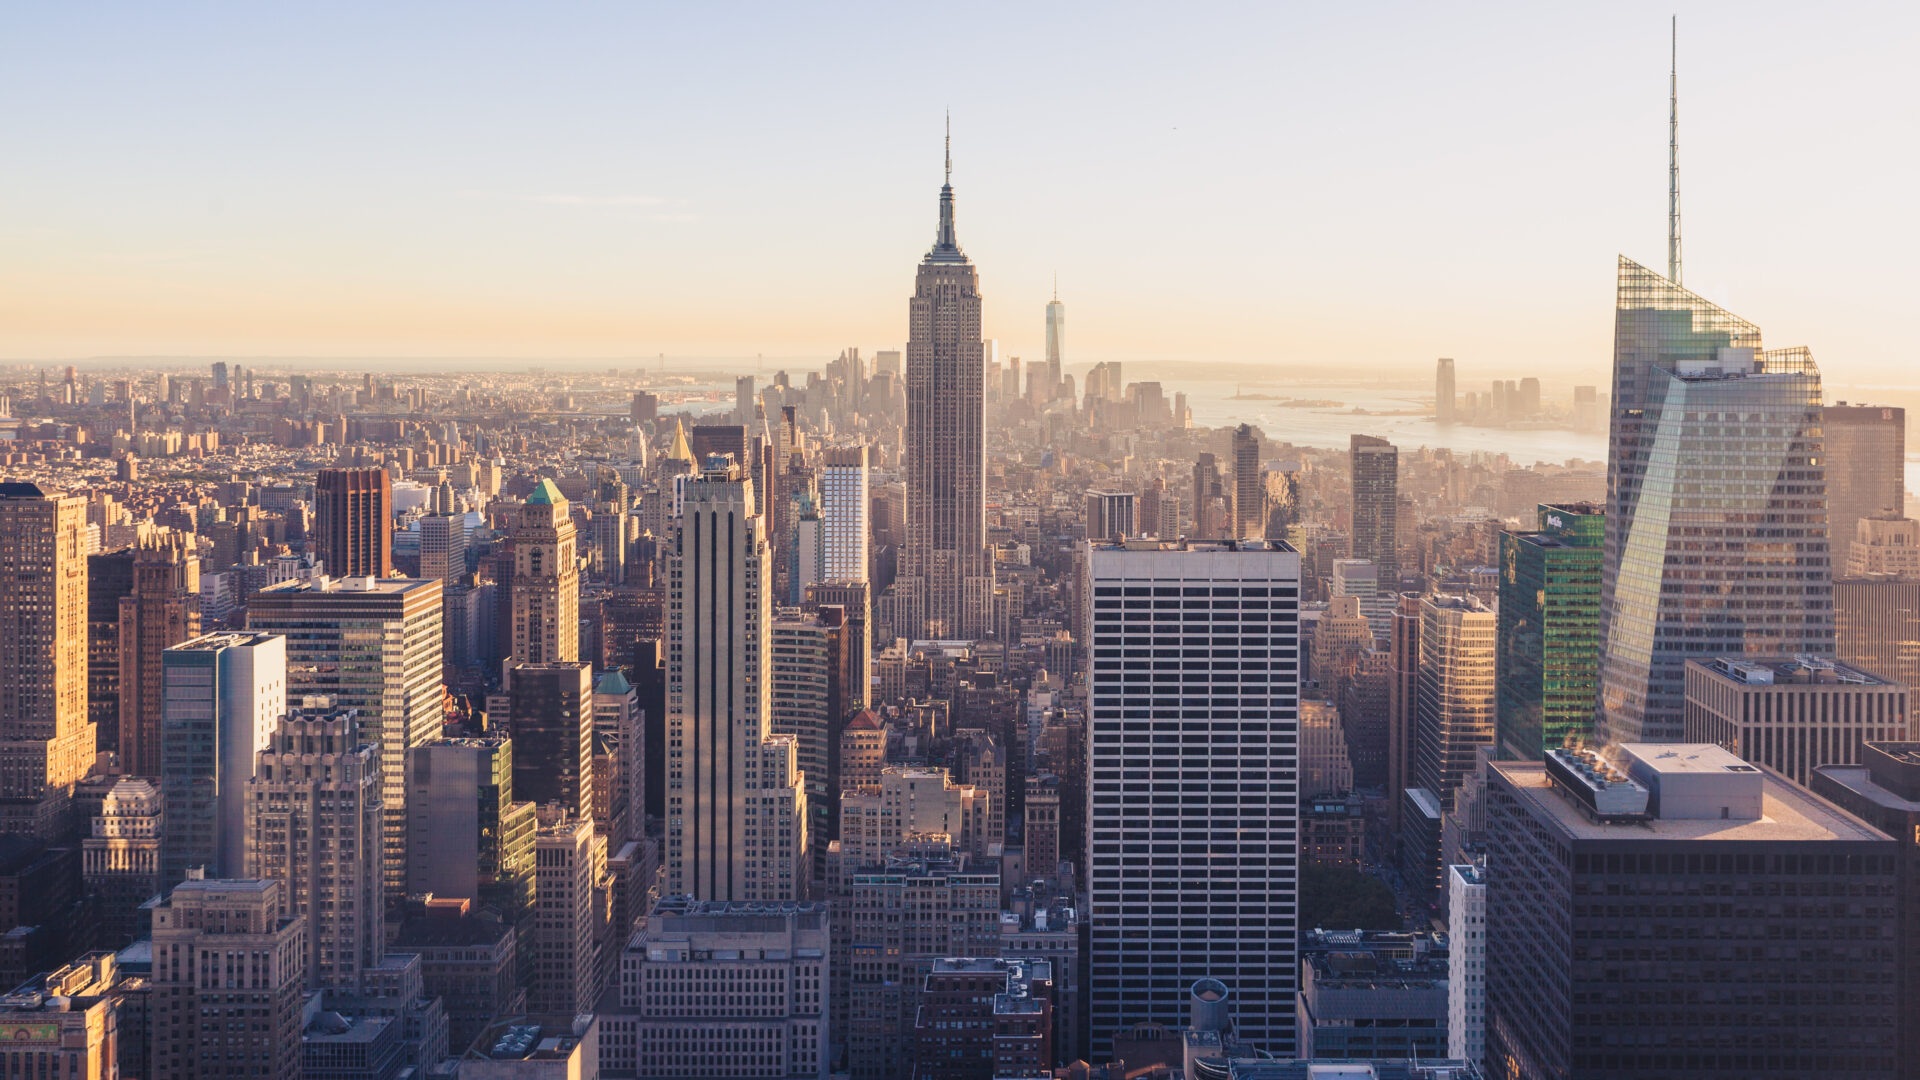 5 iconic New York City skyscrapers